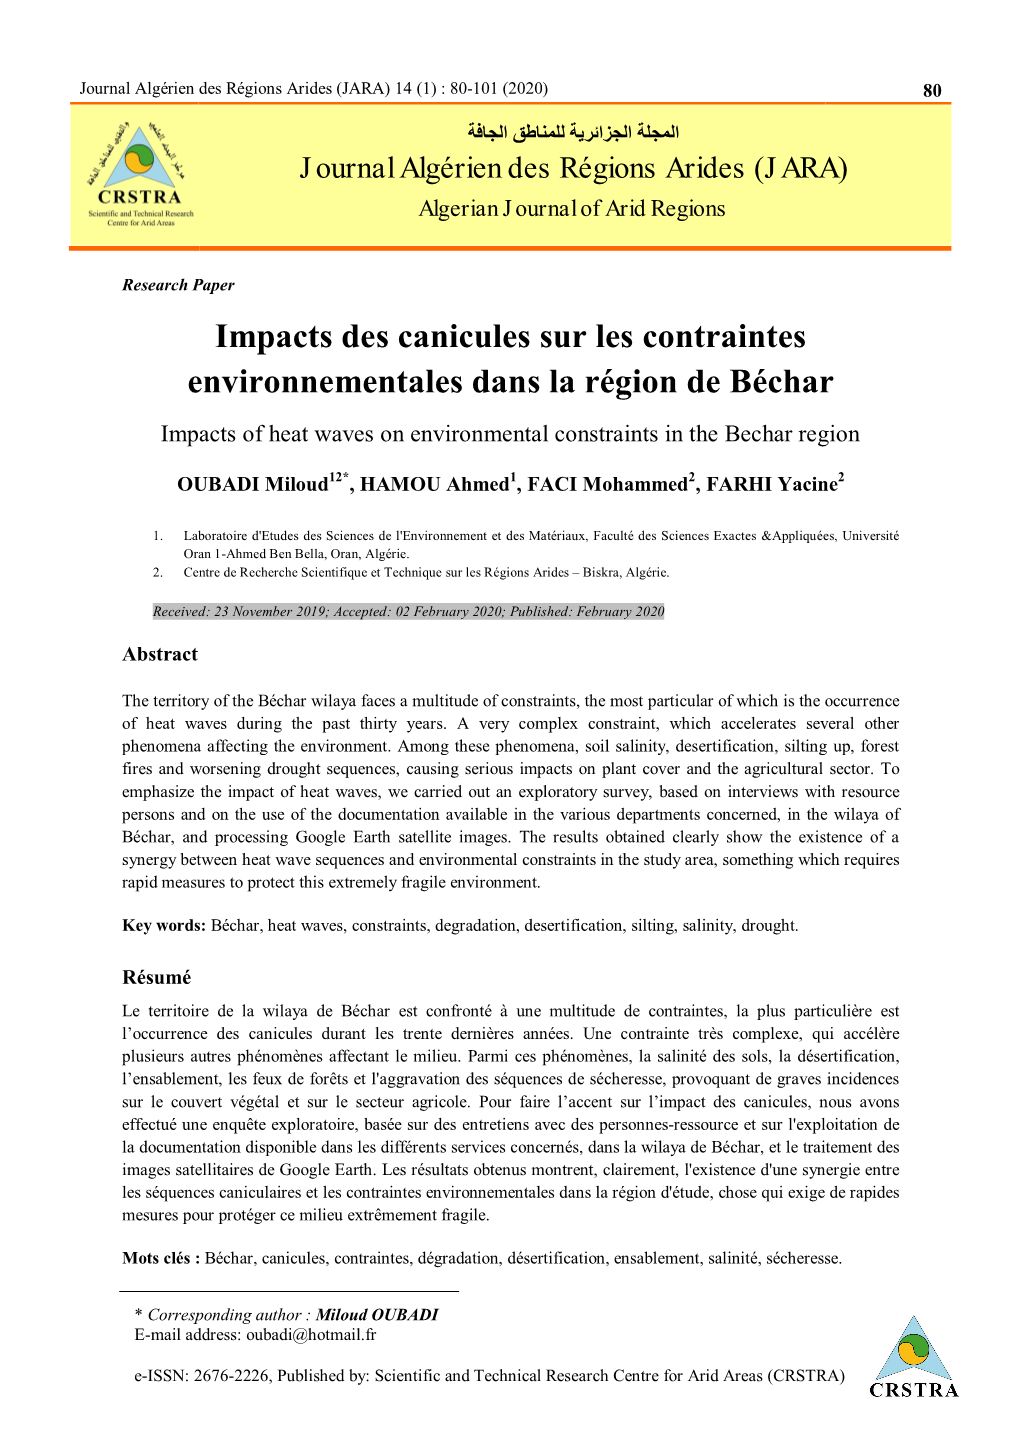 Impacts Des Canicules Sur Les Contraintes Environnementales Dans La Région De Béchar Impacts of Heat Waves on Environmental Constraints in the Bechar Region